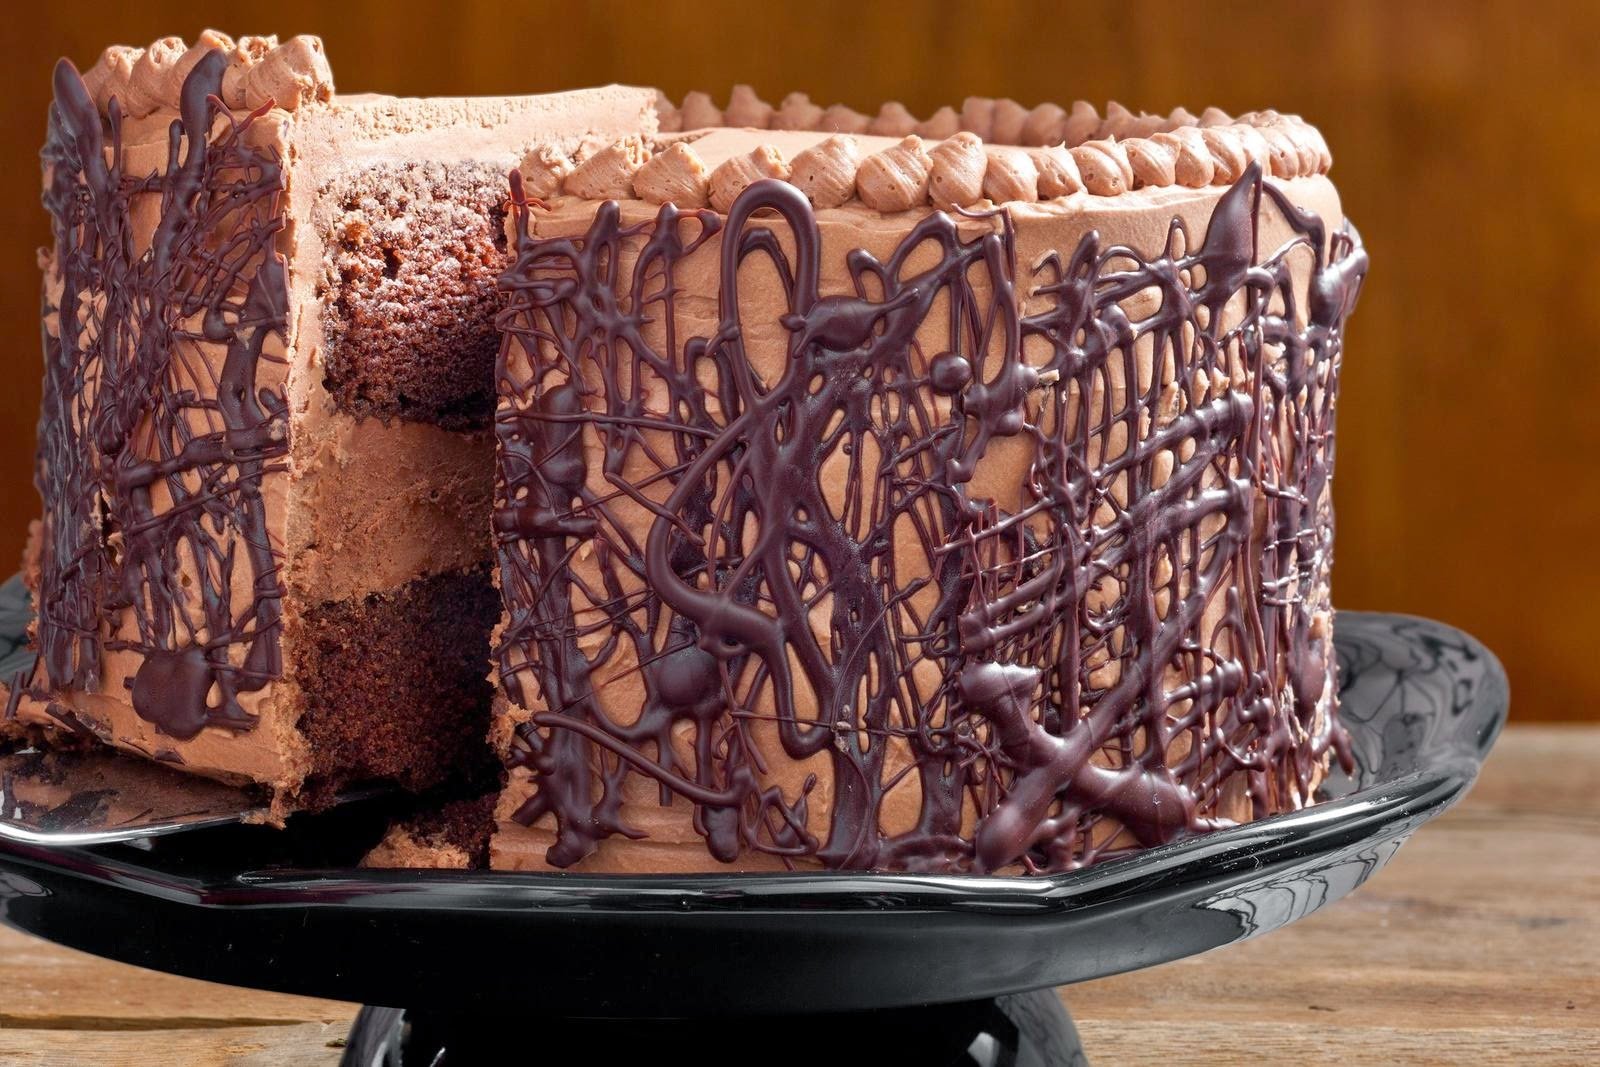 Шоколадный торт покрытый шоколадом